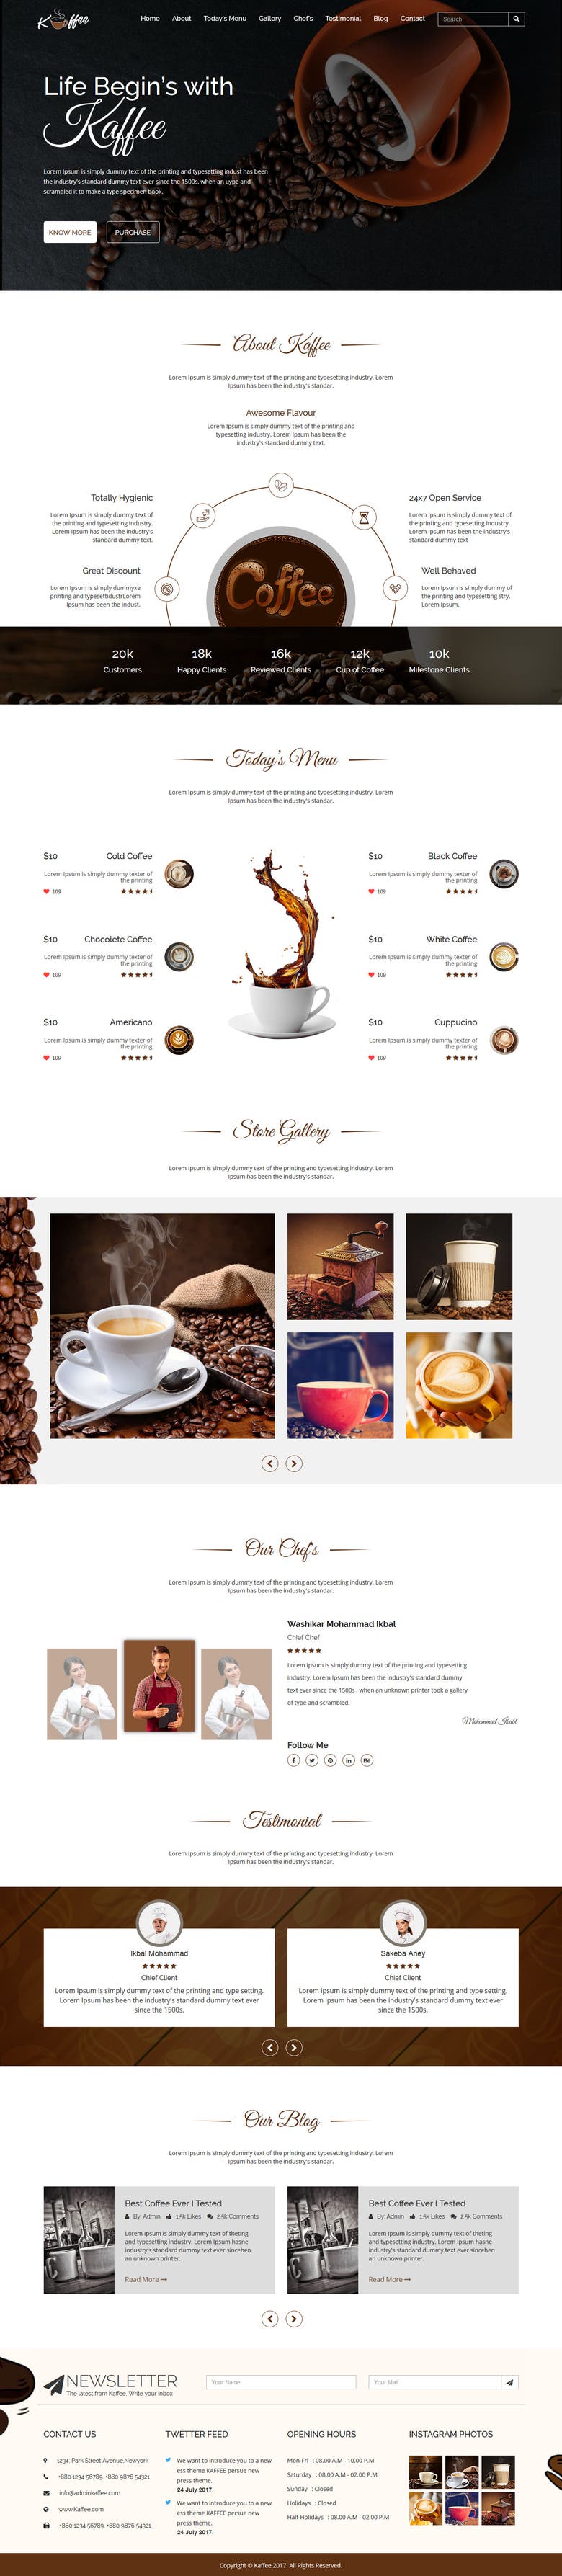 Kaffee - Coffee Shop Business HTML Template